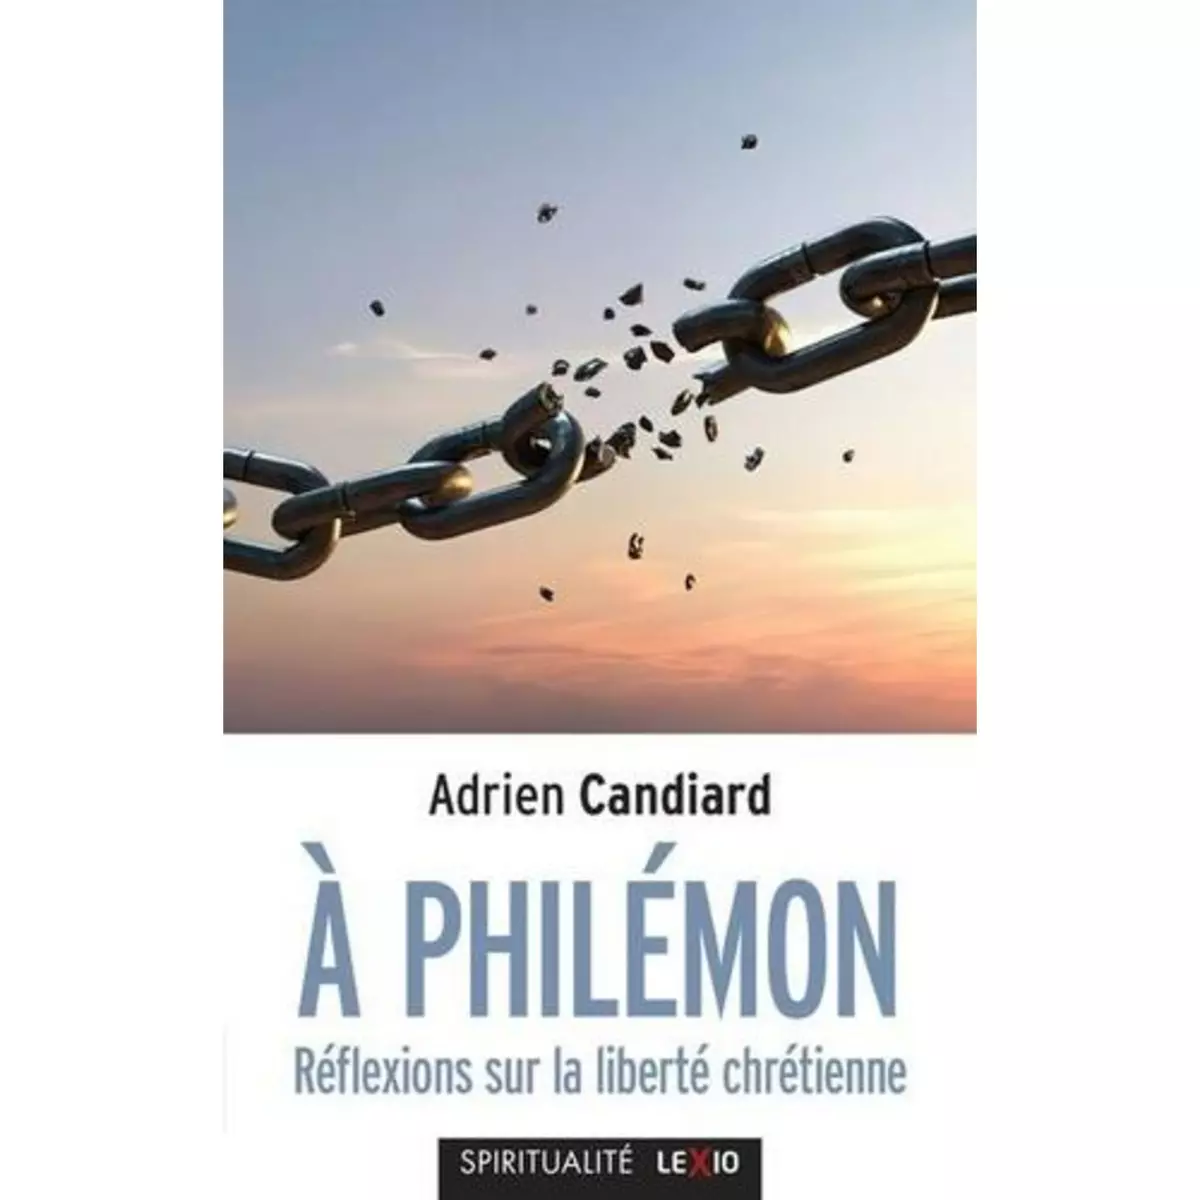  A PHILEMON. REFLEXIONS SUR LA LIBERTE CHRETIENNE, Candiard Adrien